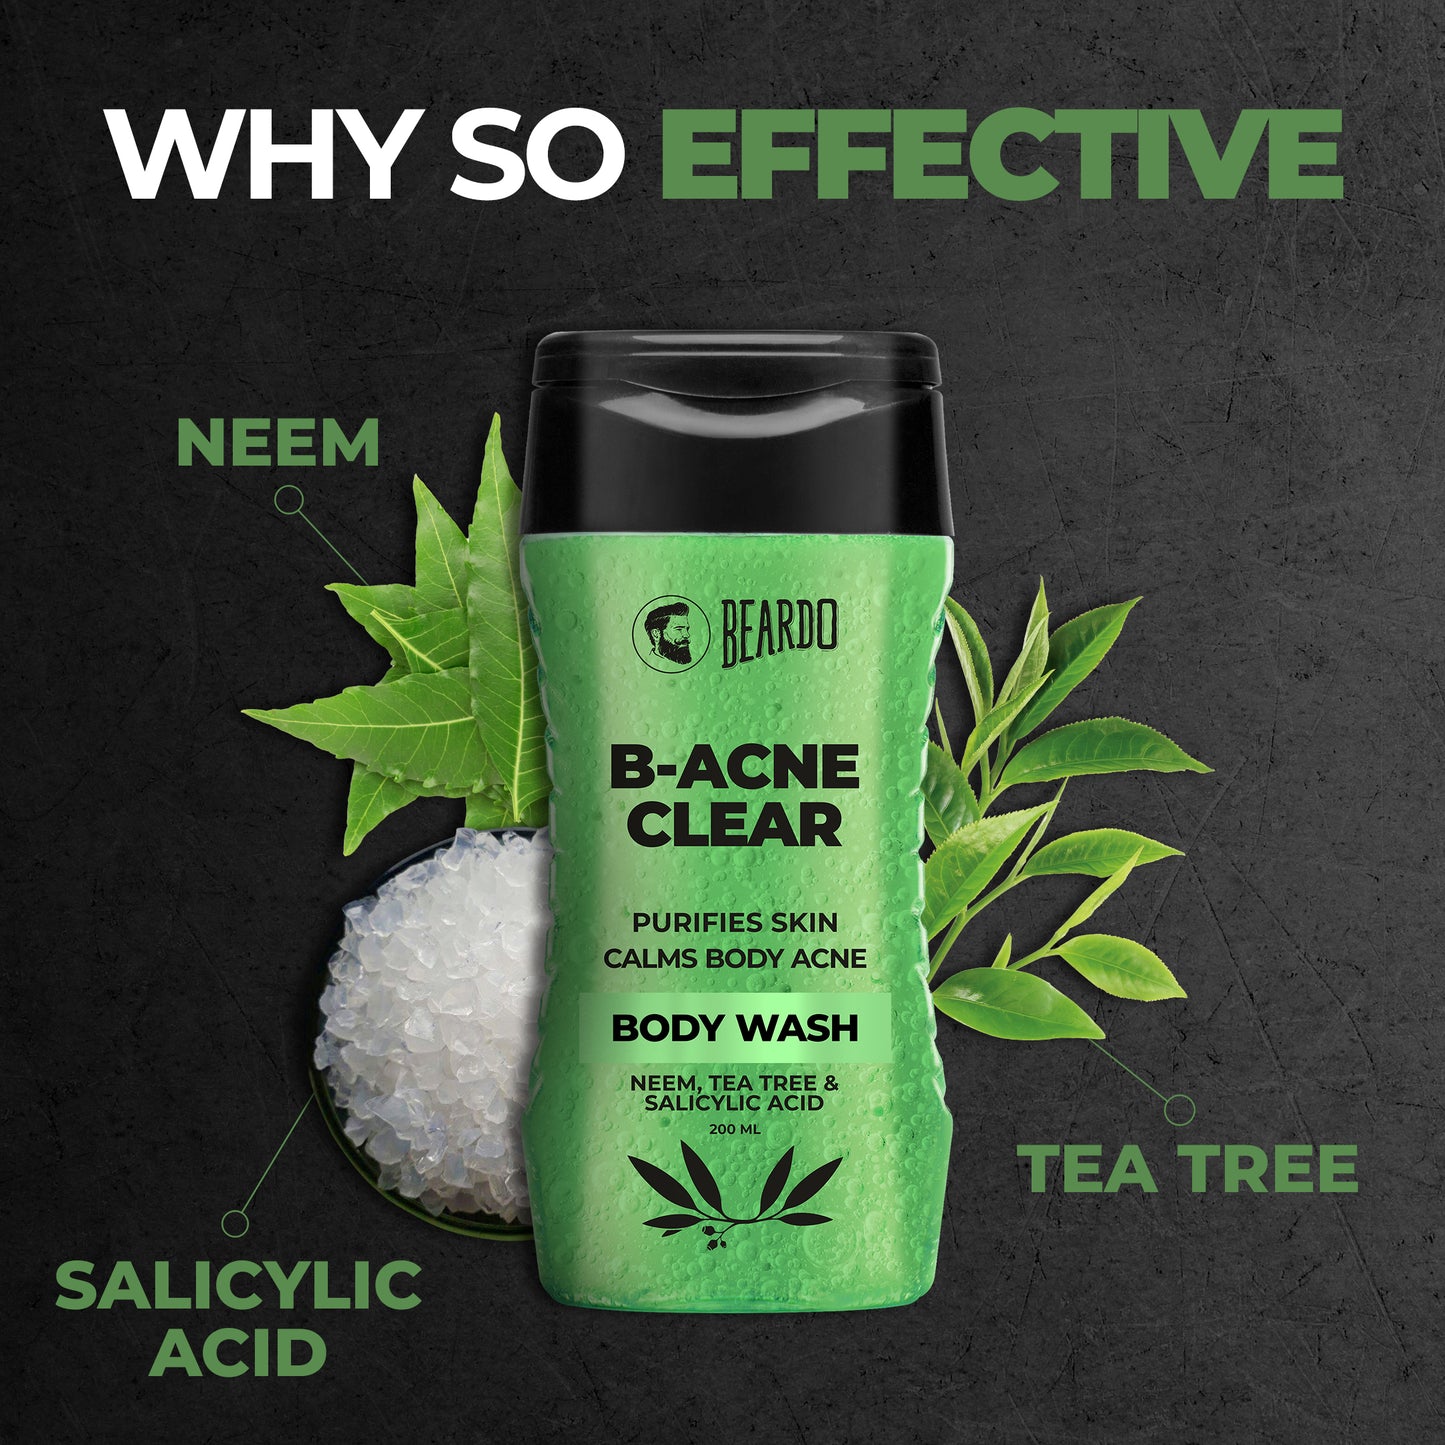 tea tree, salicylic acid, neem